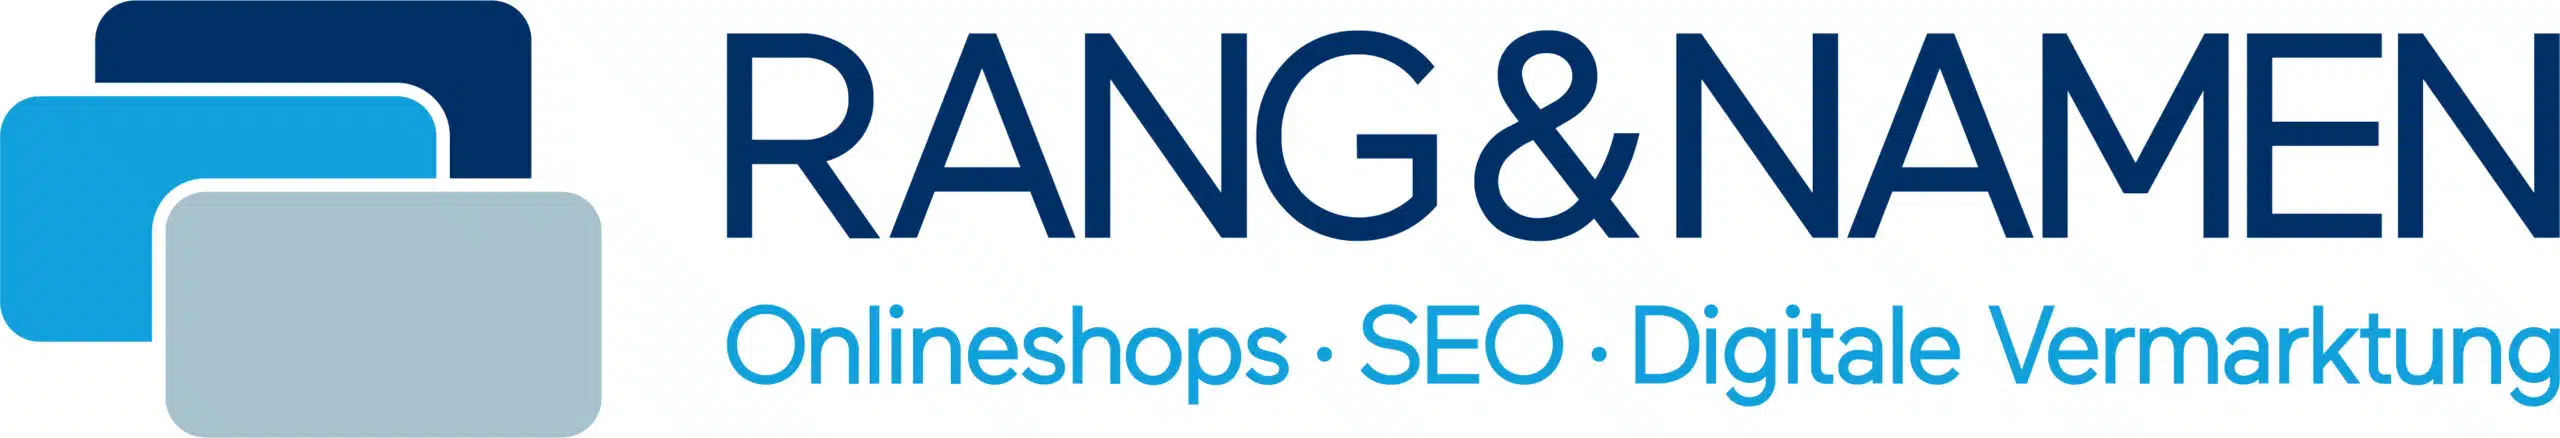 RANG & NAMEN Logo